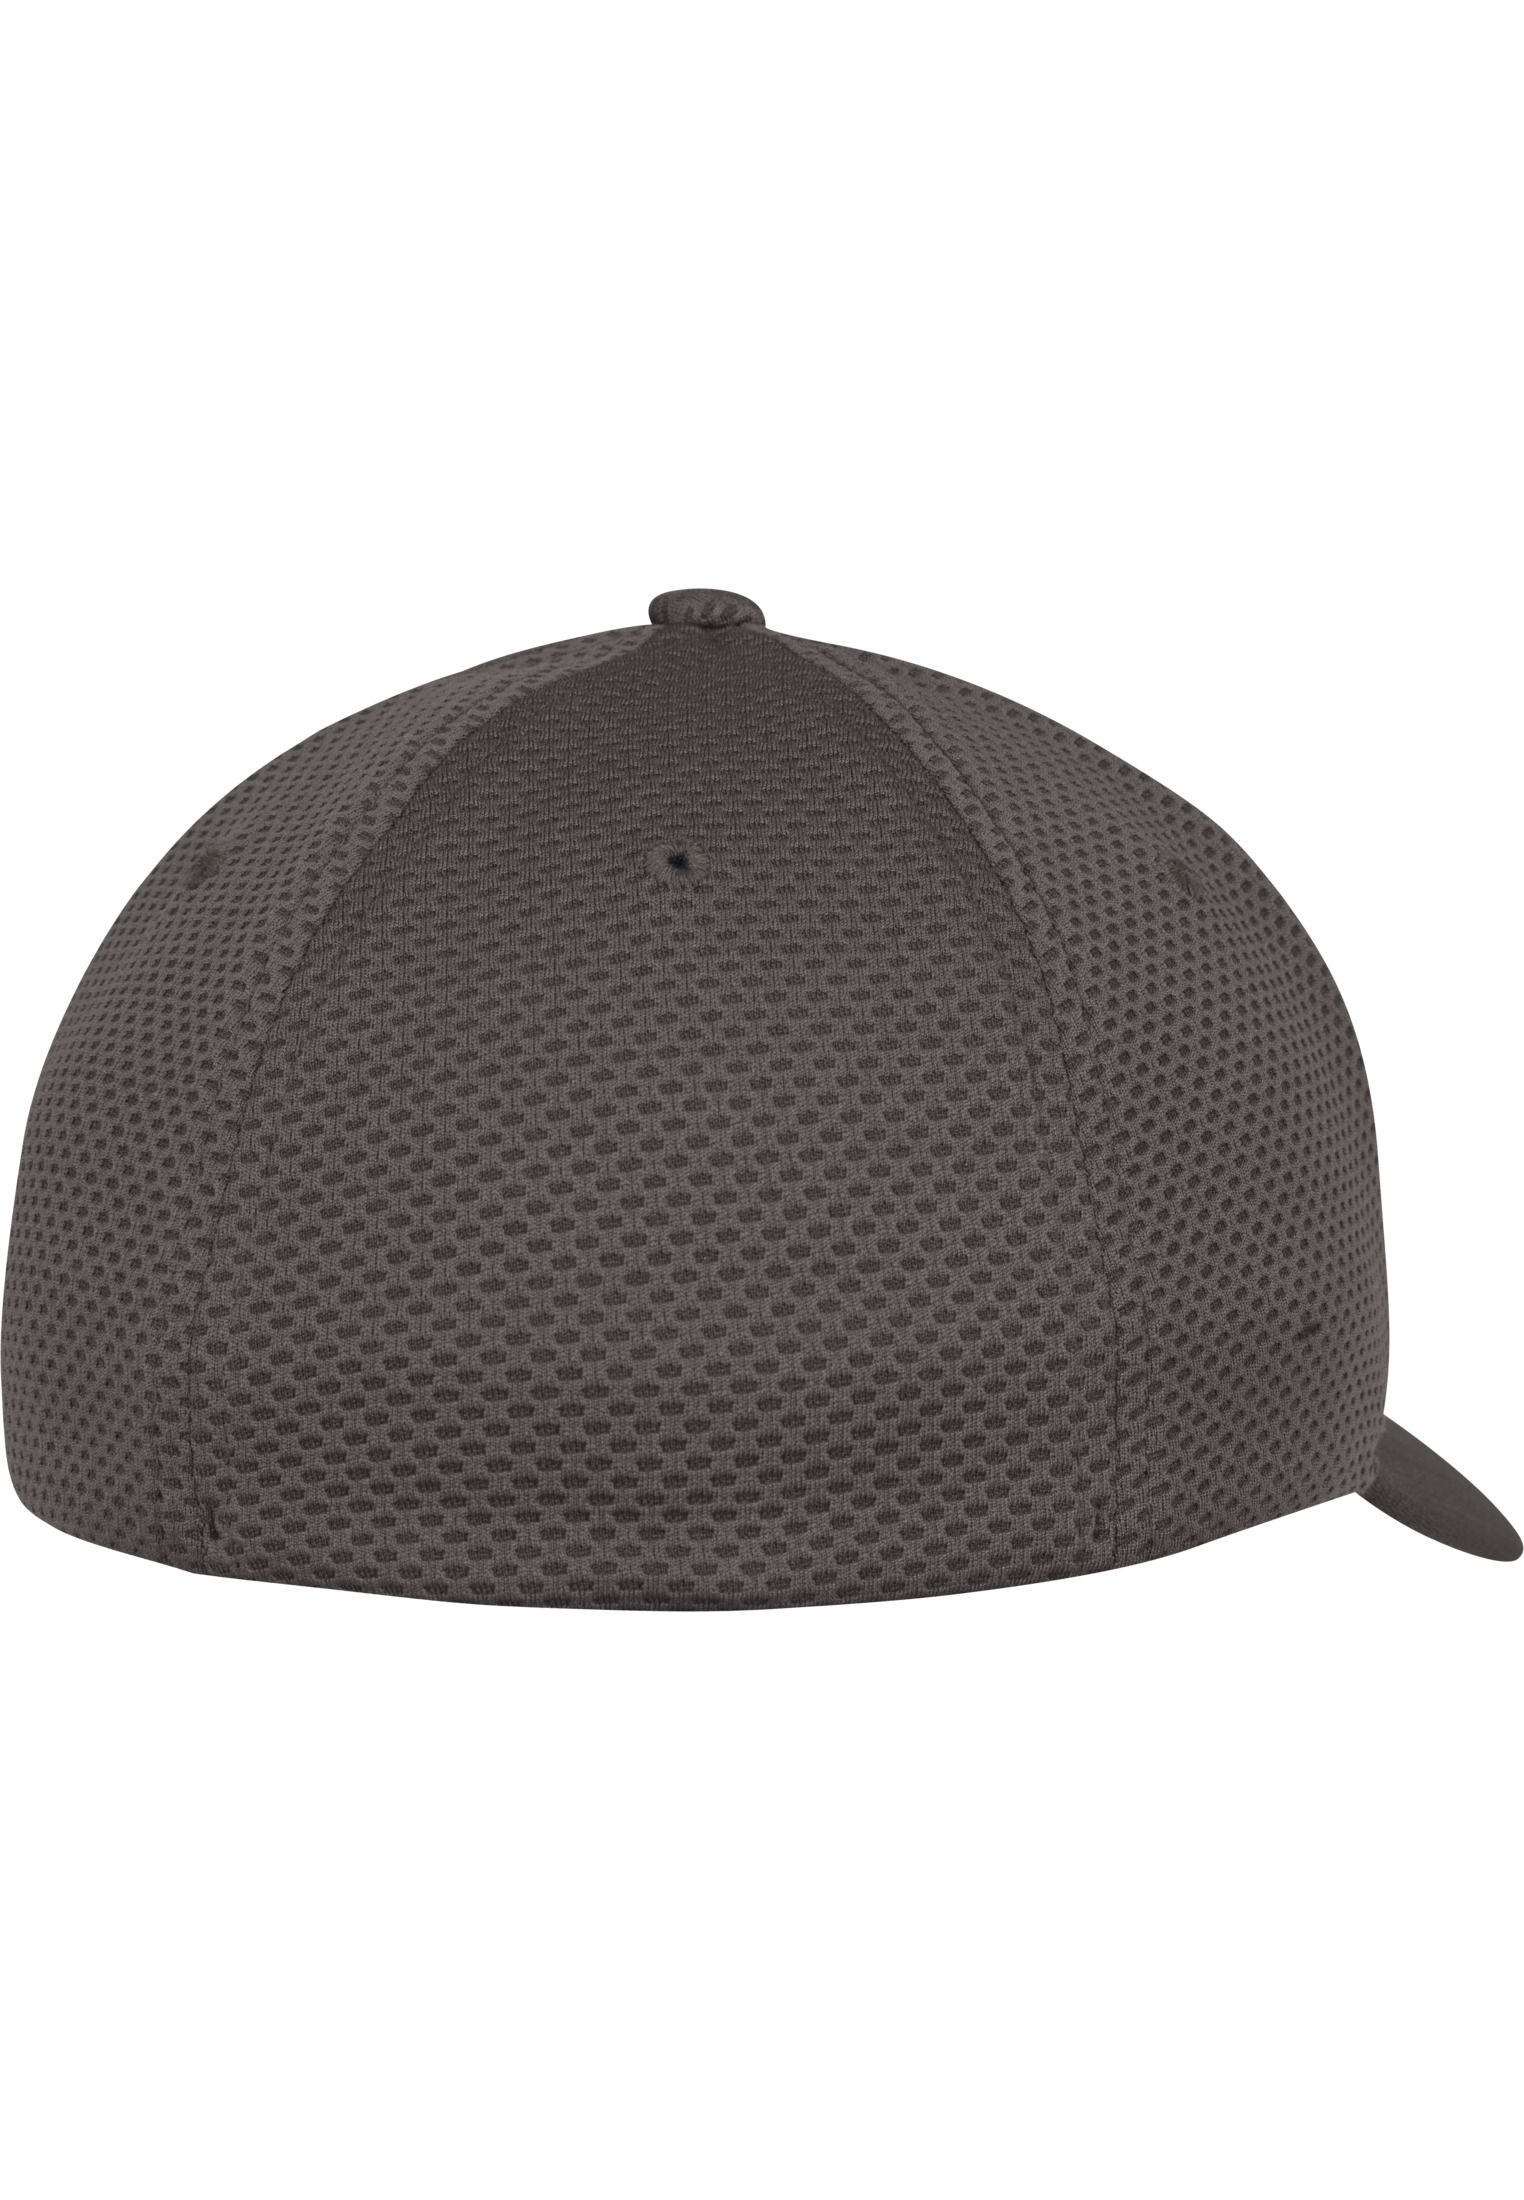 Hexagon Jersey Cap-6584 3D Flexfit